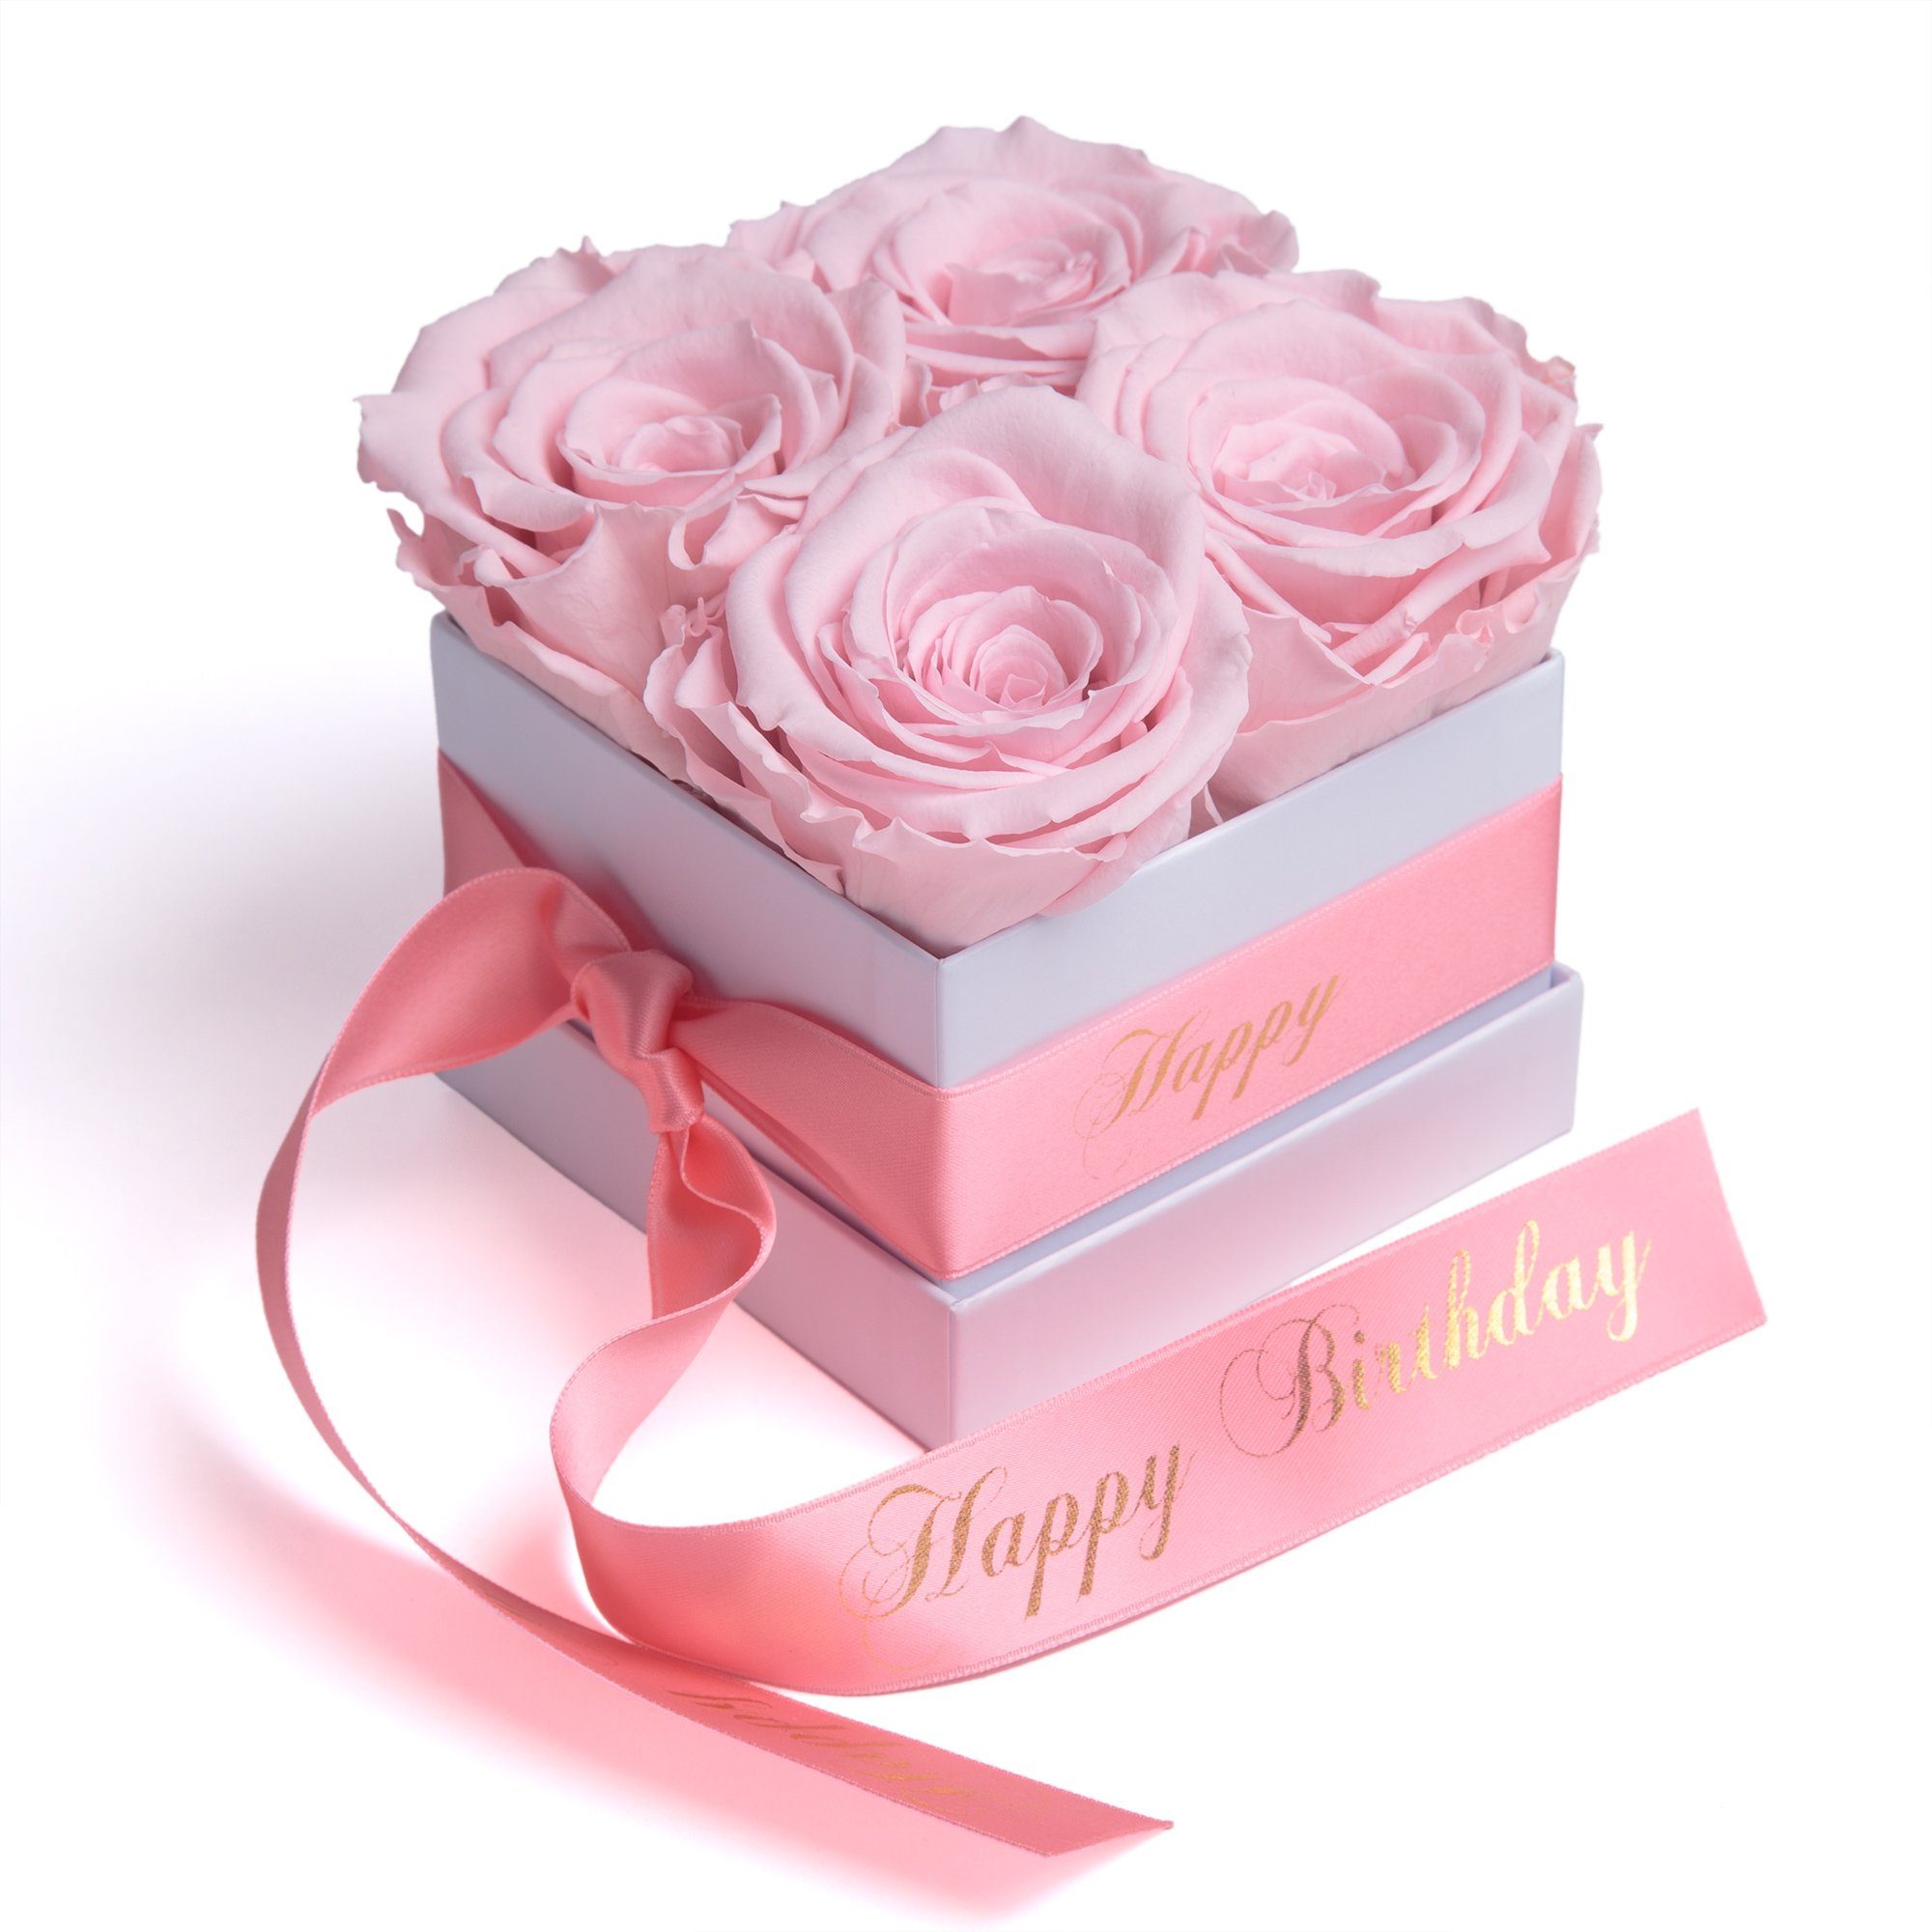 Kunstblume Infinity Rosenbox Happy Birthday Geschenk Geburtstag für Frauen Rose, ROSEMARIE SCHULZ Heidelberg, Höhe 8.5 cm, echte Rosen haltbar 3 Jahre rosa